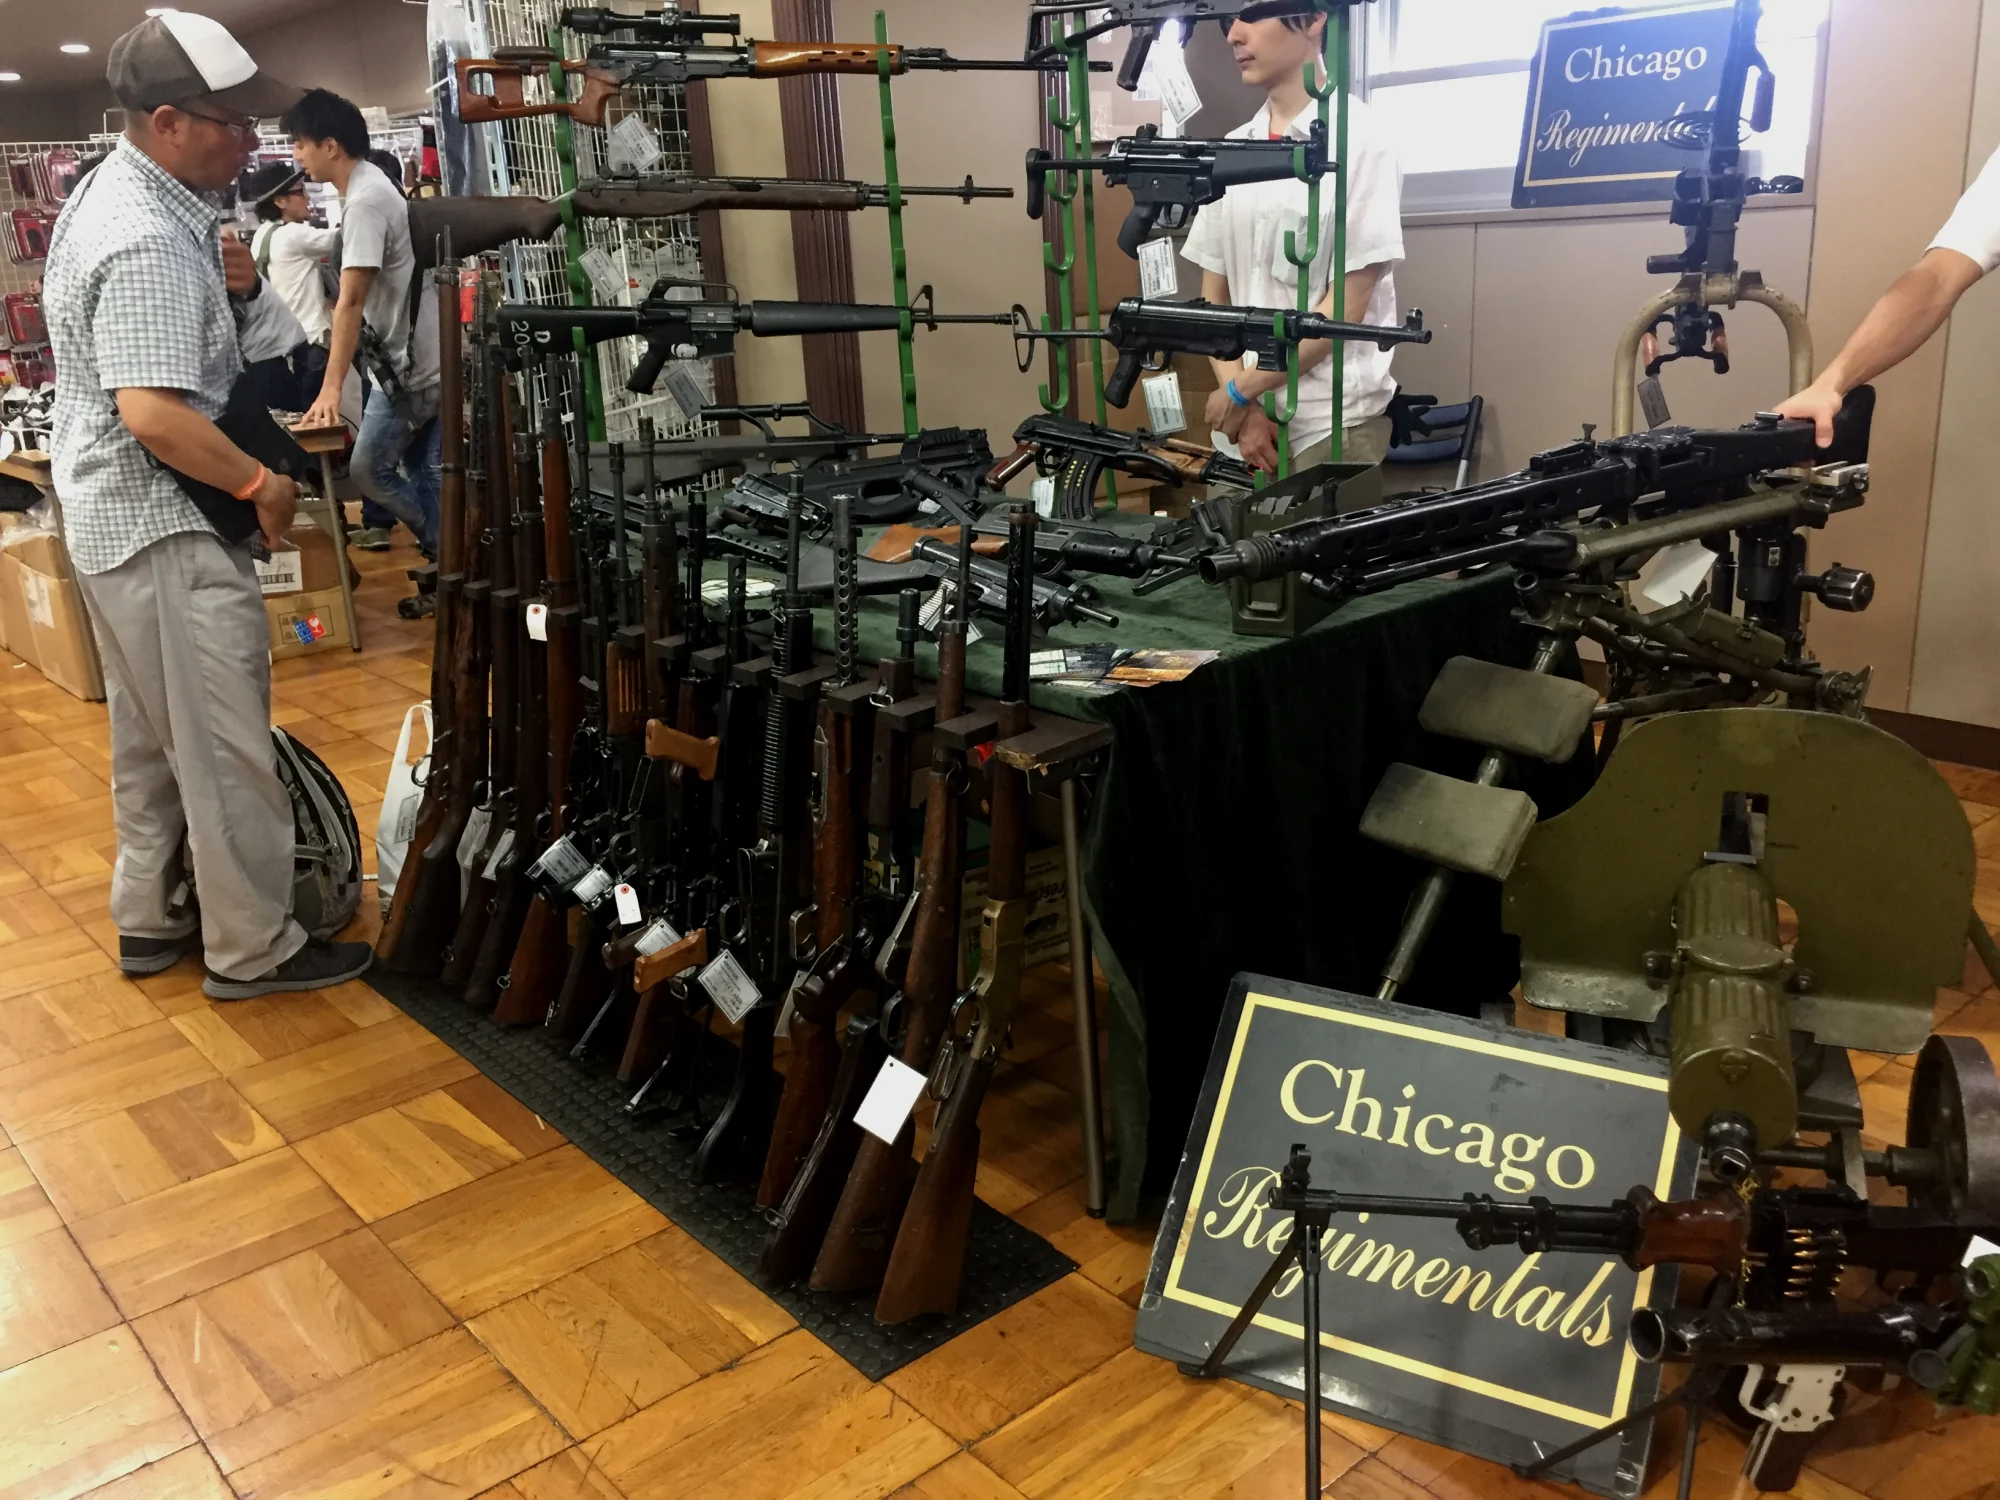 在东京和大阪都有店铺的Chicago Regimentals阉枪店